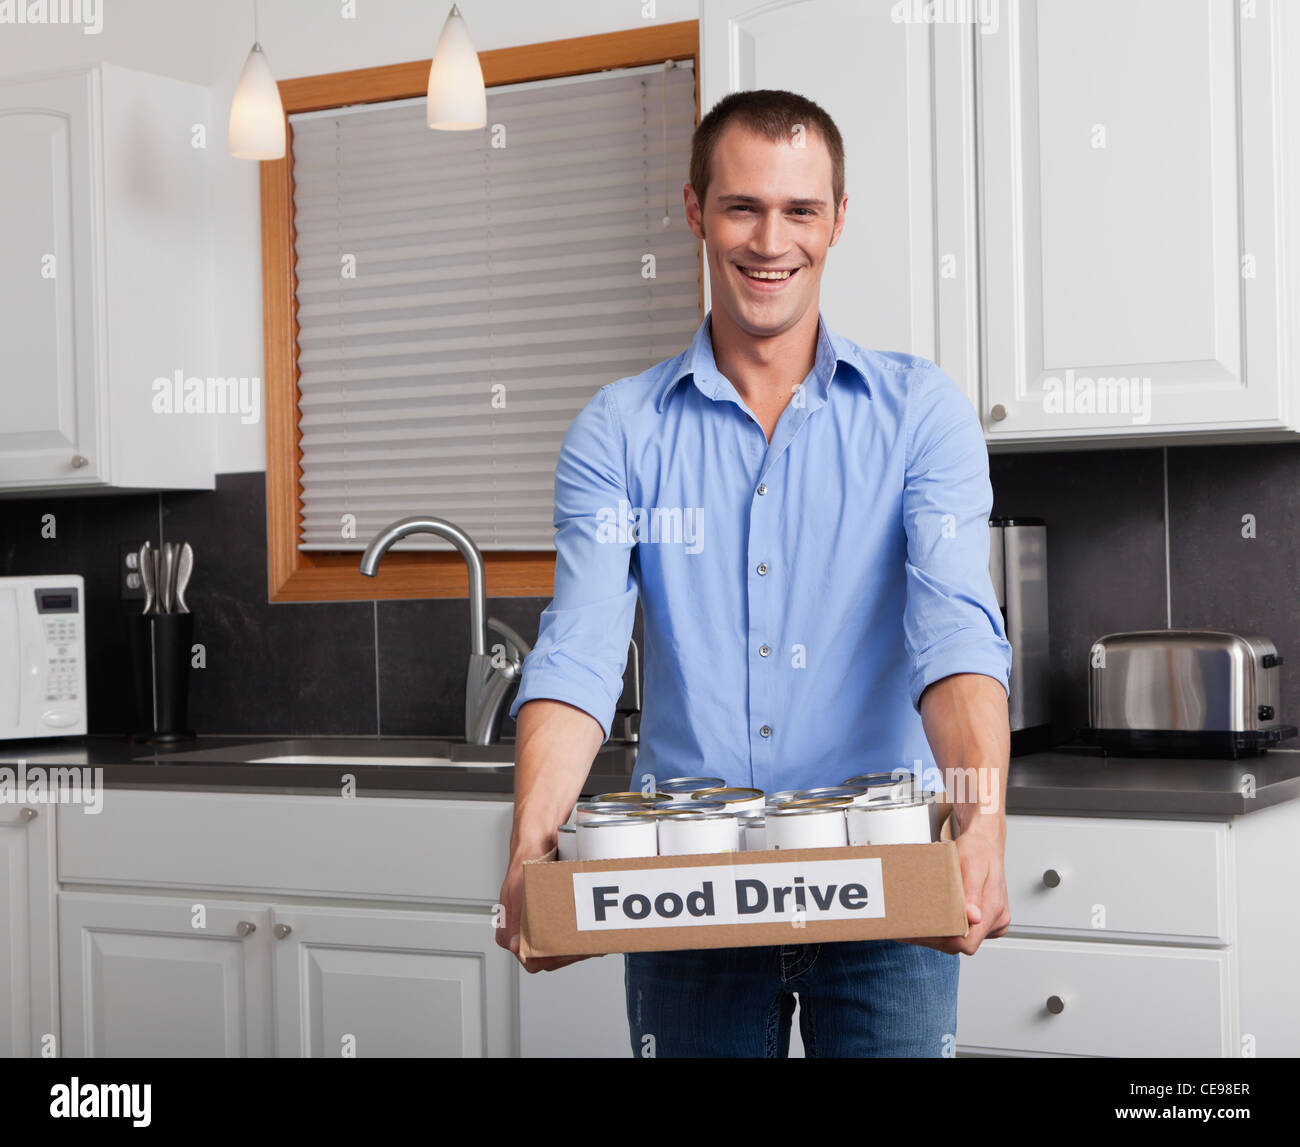 États-unis, Illinois, Metamora, Portrait of smiling man Holding boîte en carton avec de la nourriture en conserve dans la cuisine Banque D'Images